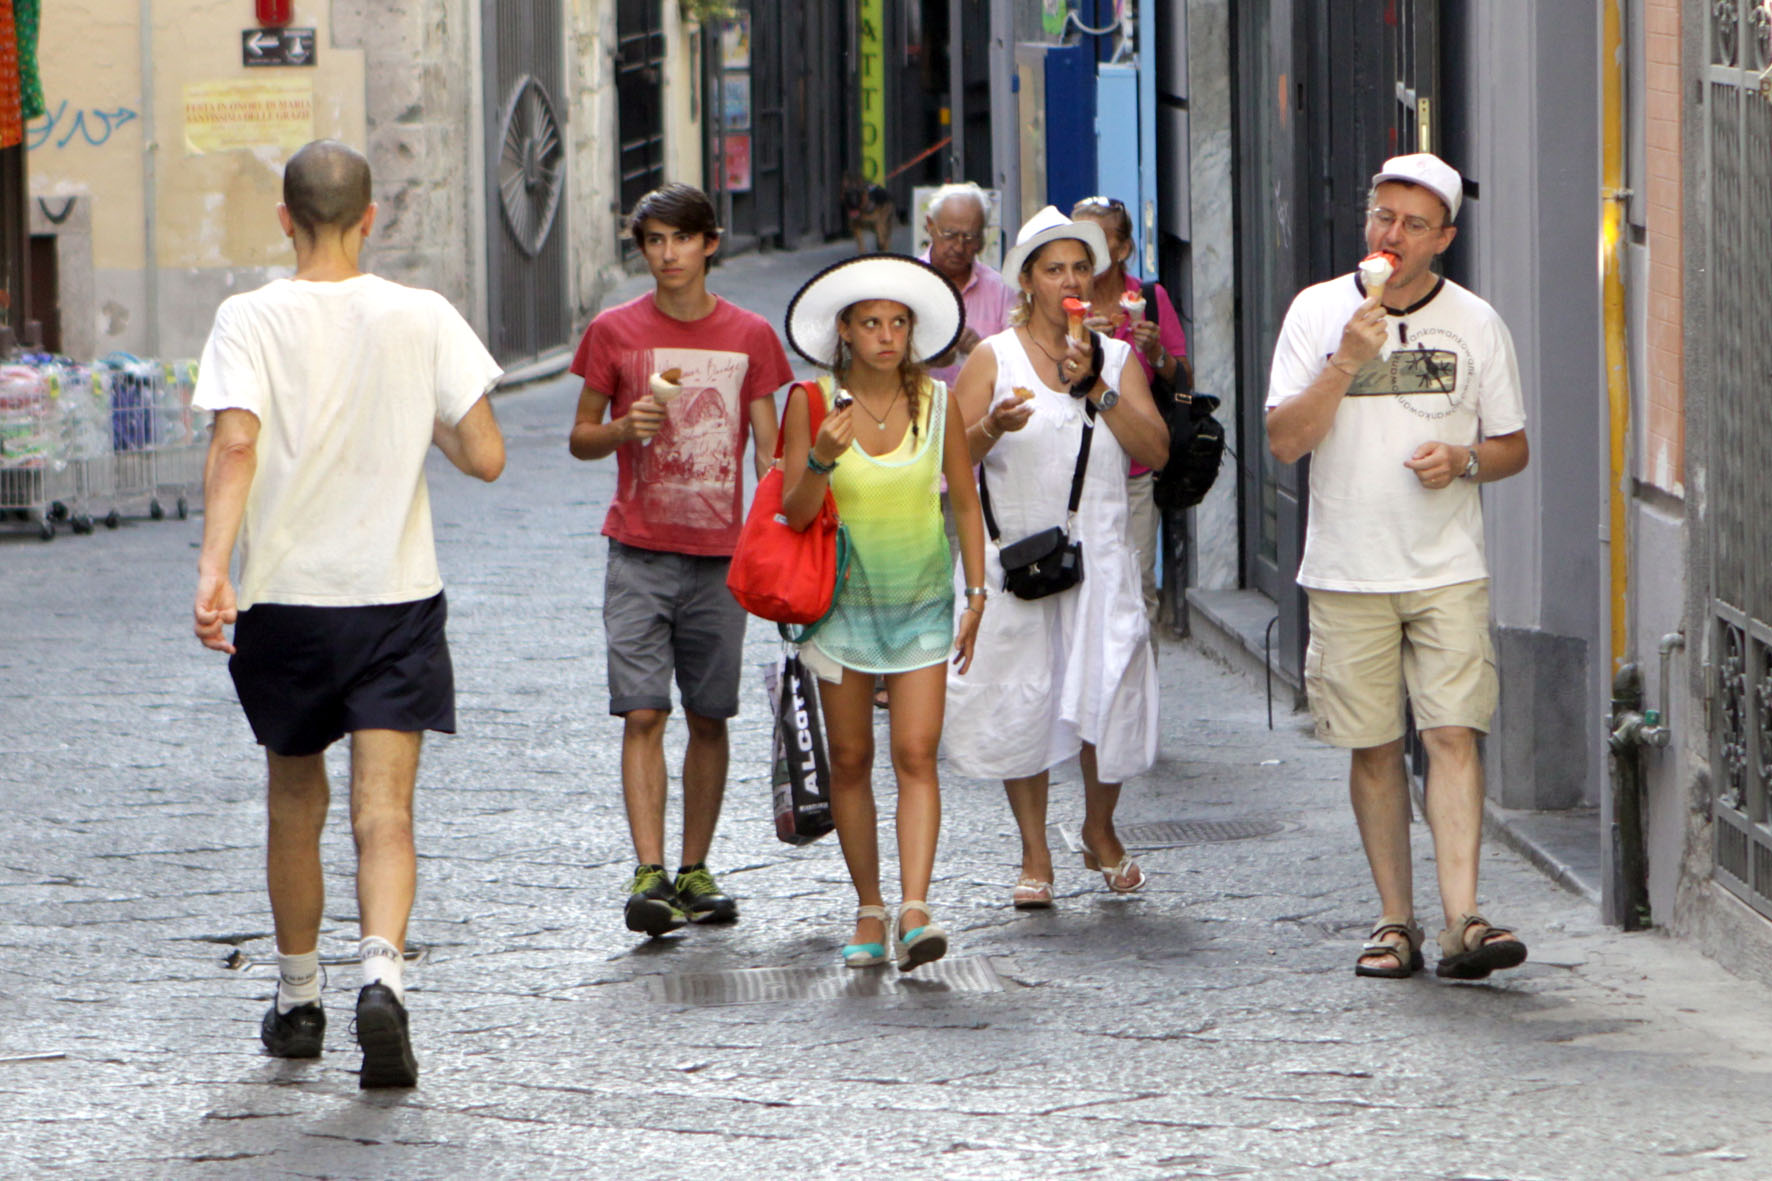 13 08 2014 Salerno Turisti in giro per la Città